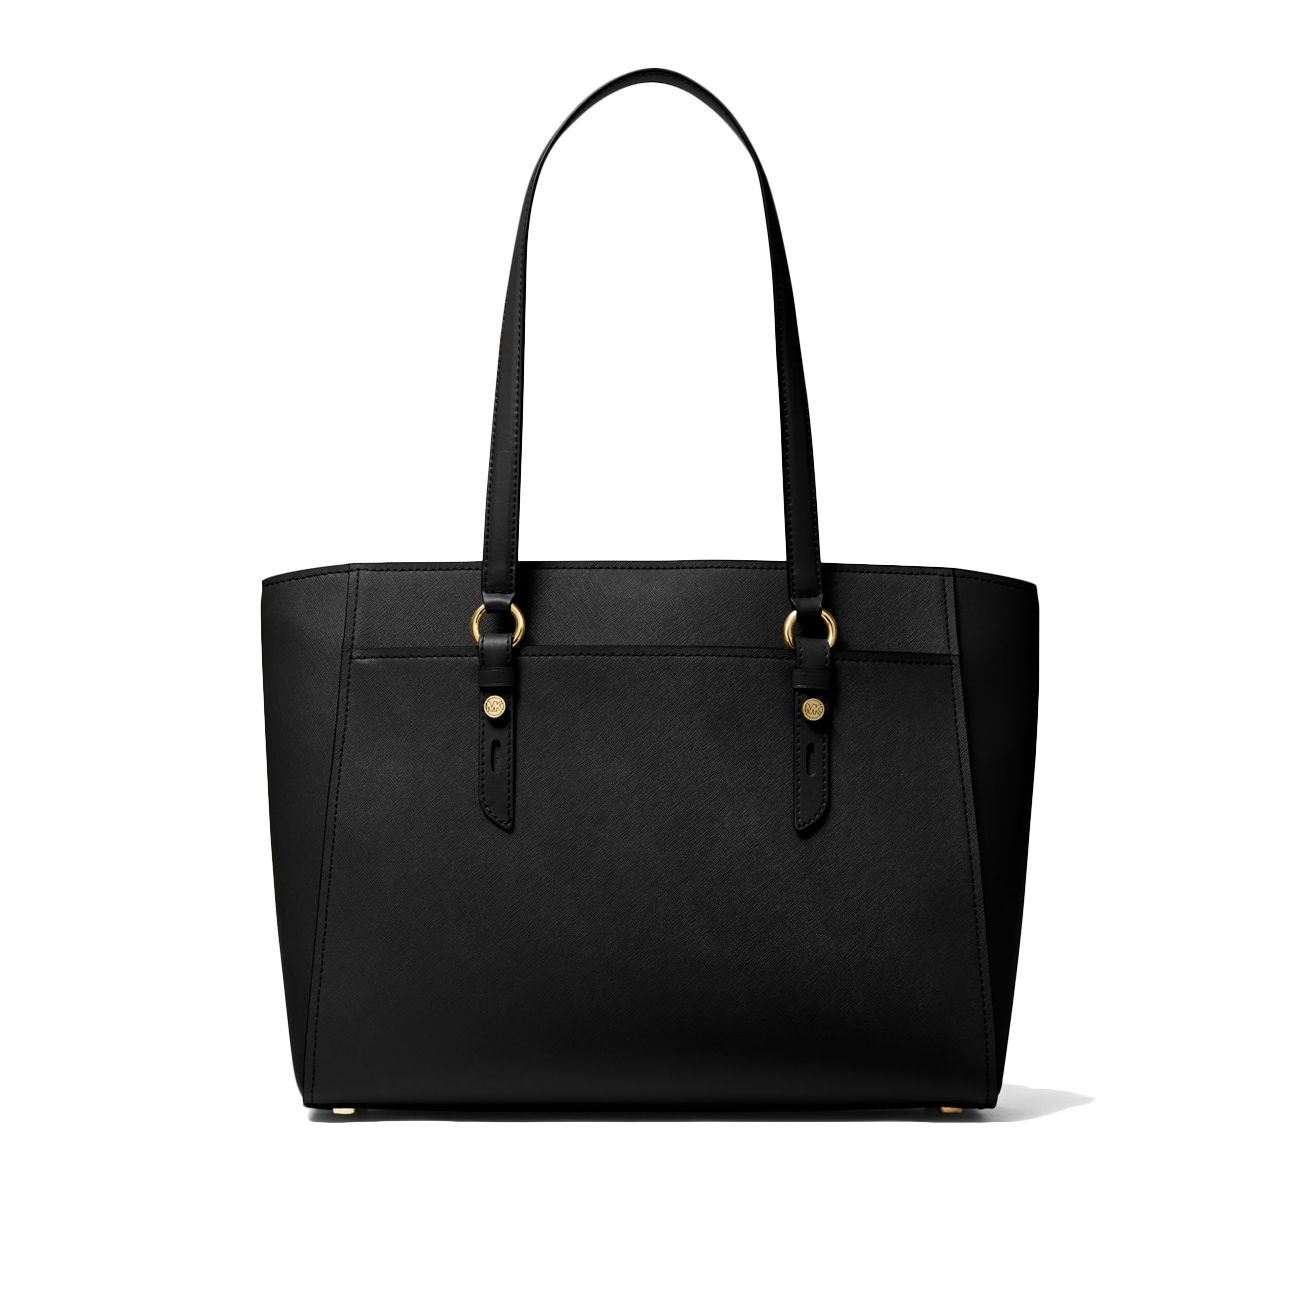 Women's “Michael Kors” Sullivan Messenger Bag, Dark Denim. One